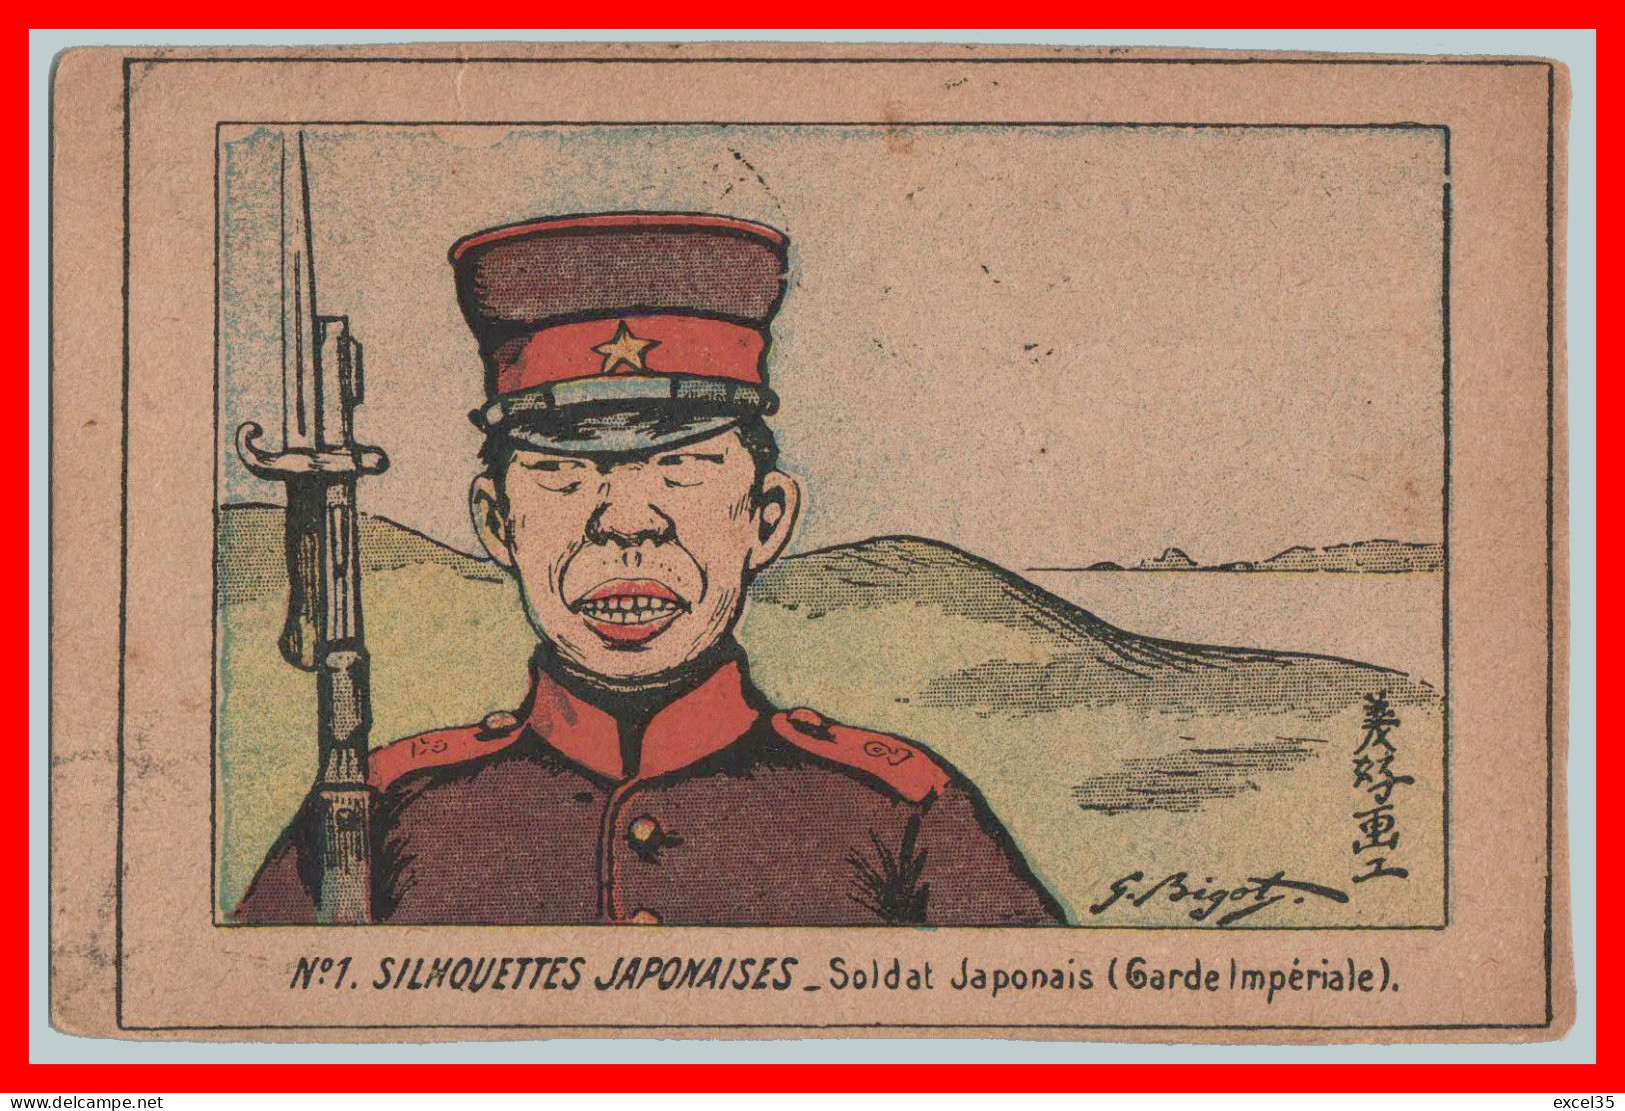 CPA PS V Février 1904 - Illustrateur G BIGOT - N°1 SILHOUETTES JAPONAISES - Soldat Japonais (Garde Impériale). - Bigot